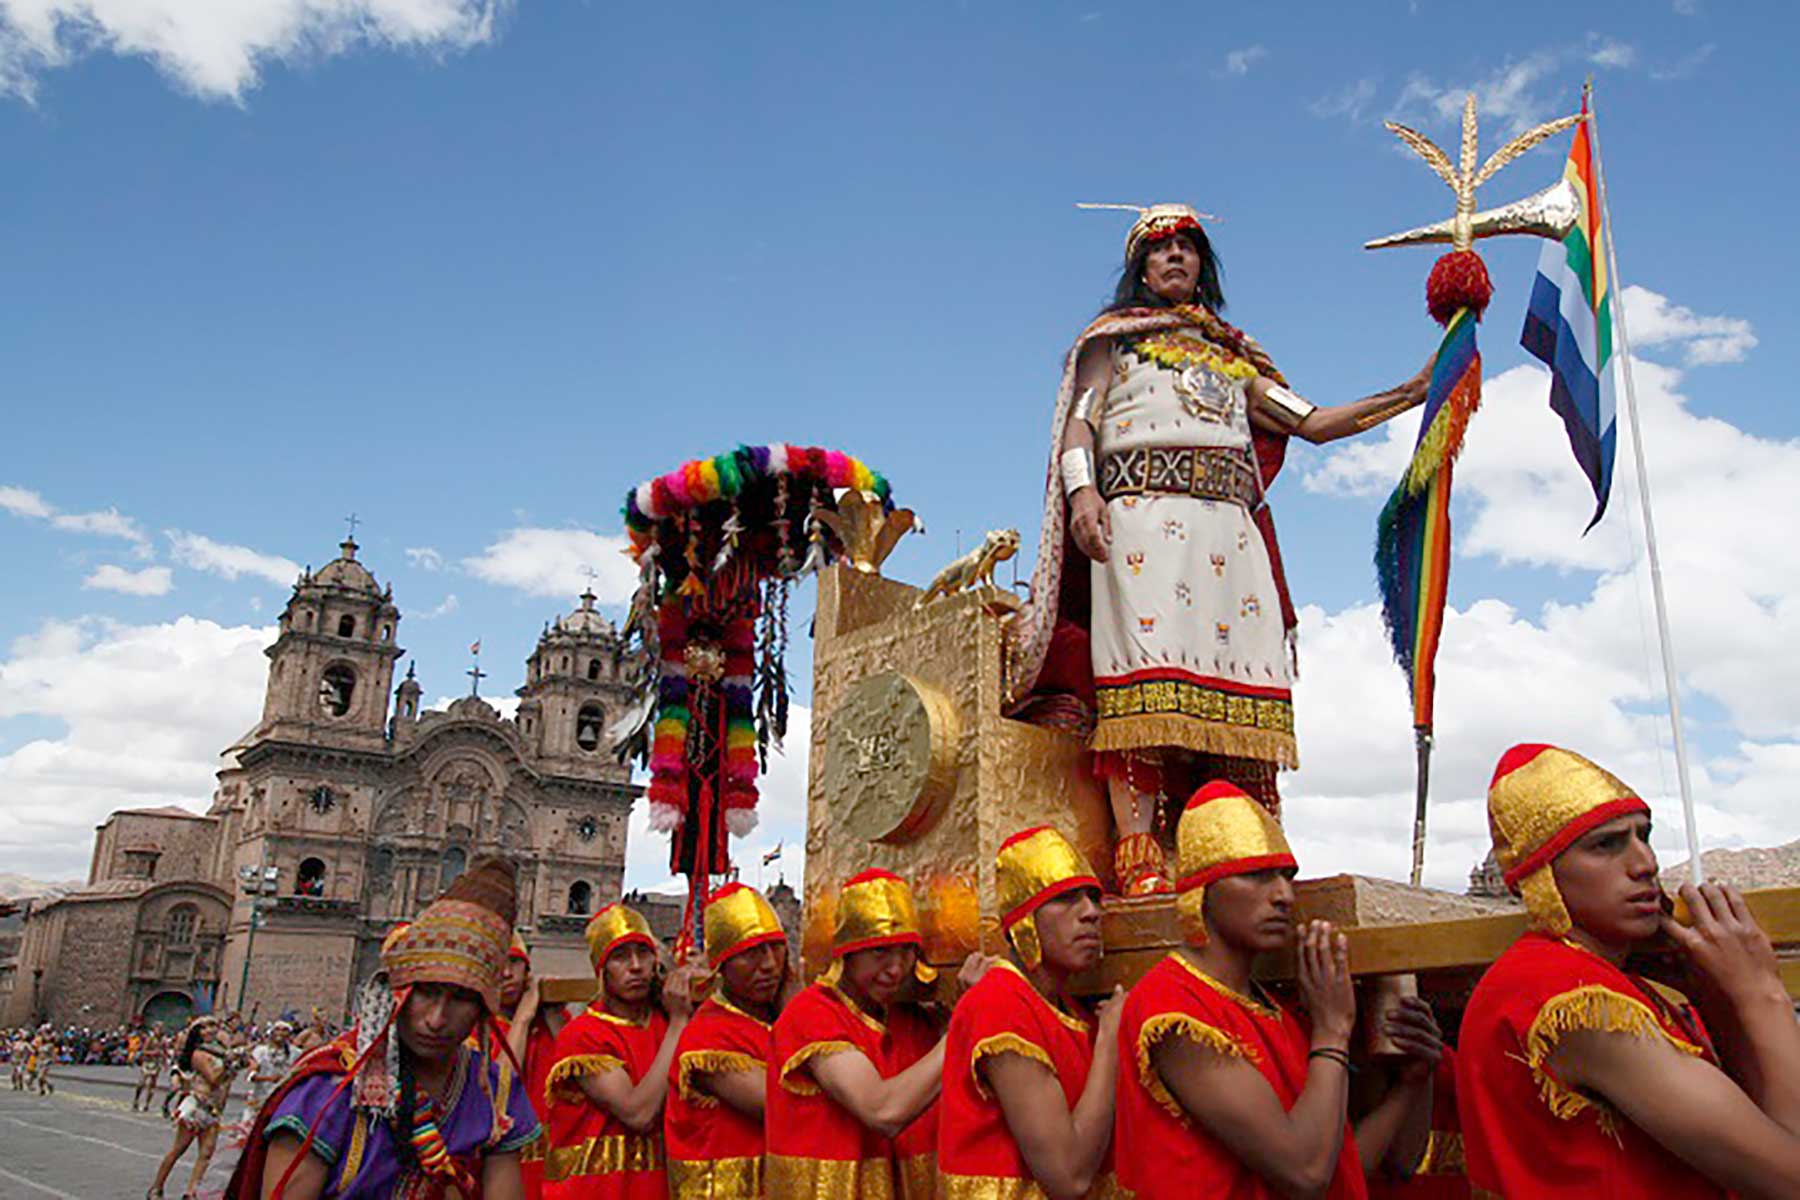 Los súbditos de mayor jerarquía cargan el anda del máximo gobernante del Tahuantinsuyo, quien encabeza los festejos jubilares